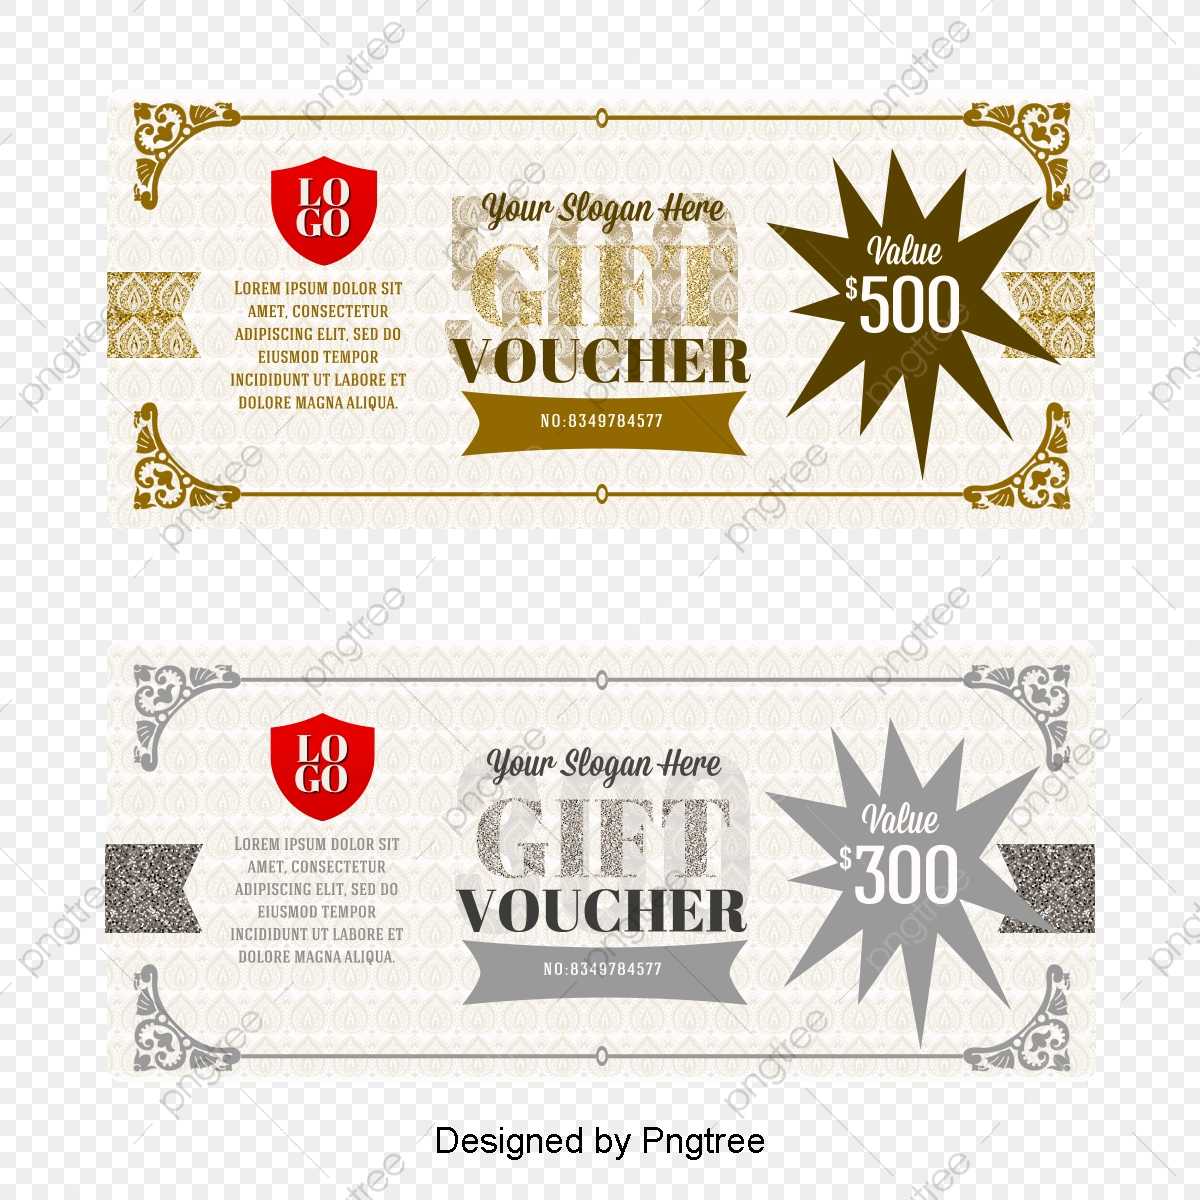 Vector Gift Certificate Template, Vector Voucher, Fantasy Regarding Gift Certificate Template Photoshop